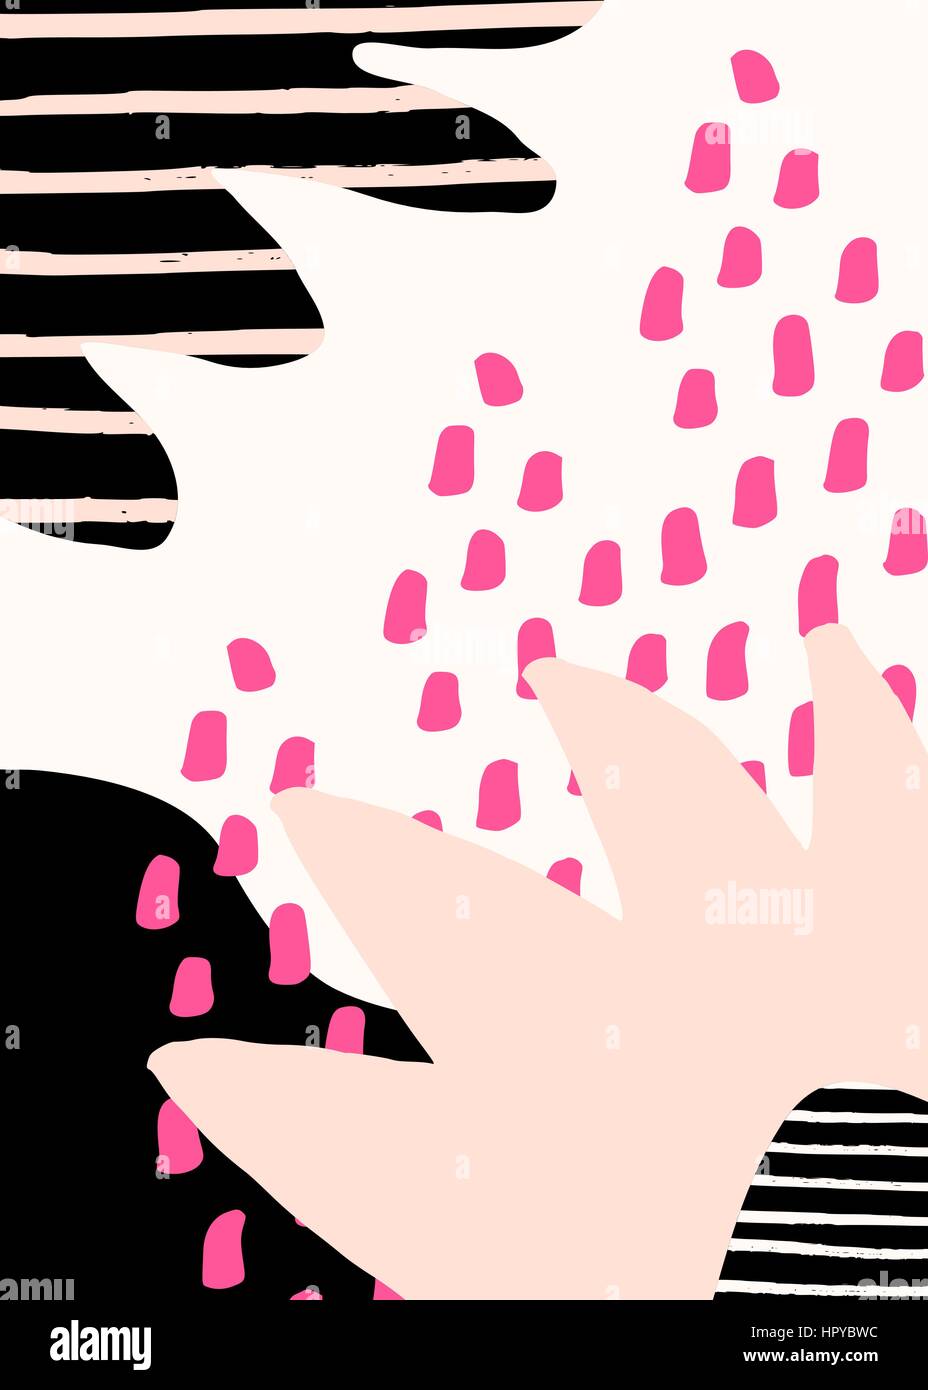 Collage stile design con abstract e forme organiche in rosa pastello, fucsia, nero e crema. Abstract tessile, carta da imballaggio, wall art design. Illustrazione Vettoriale